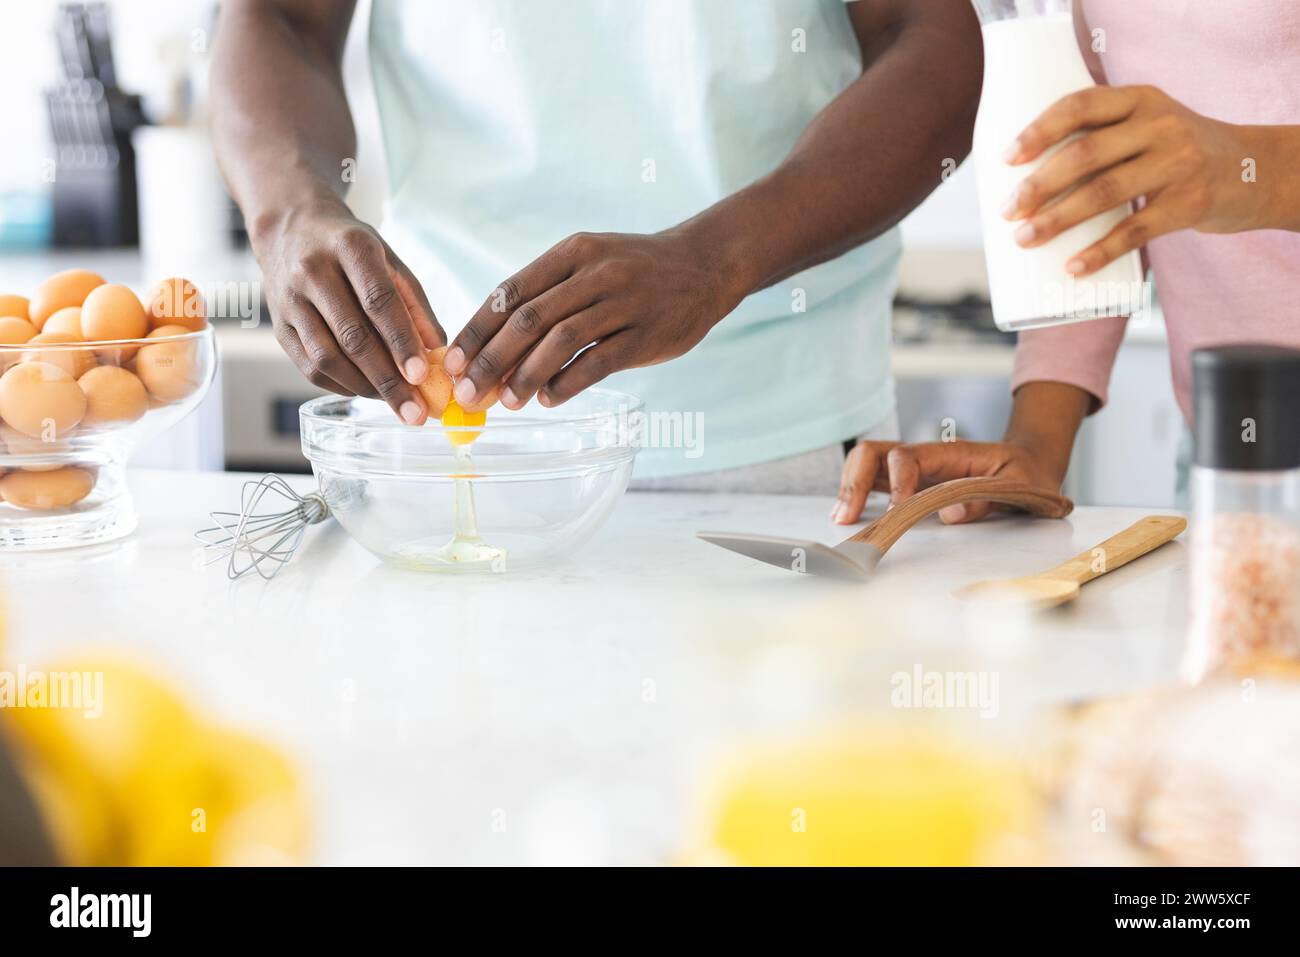 Una coppia diversificata prepara il cibo insieme in una cucina di casa, preparando uova Foto Stock